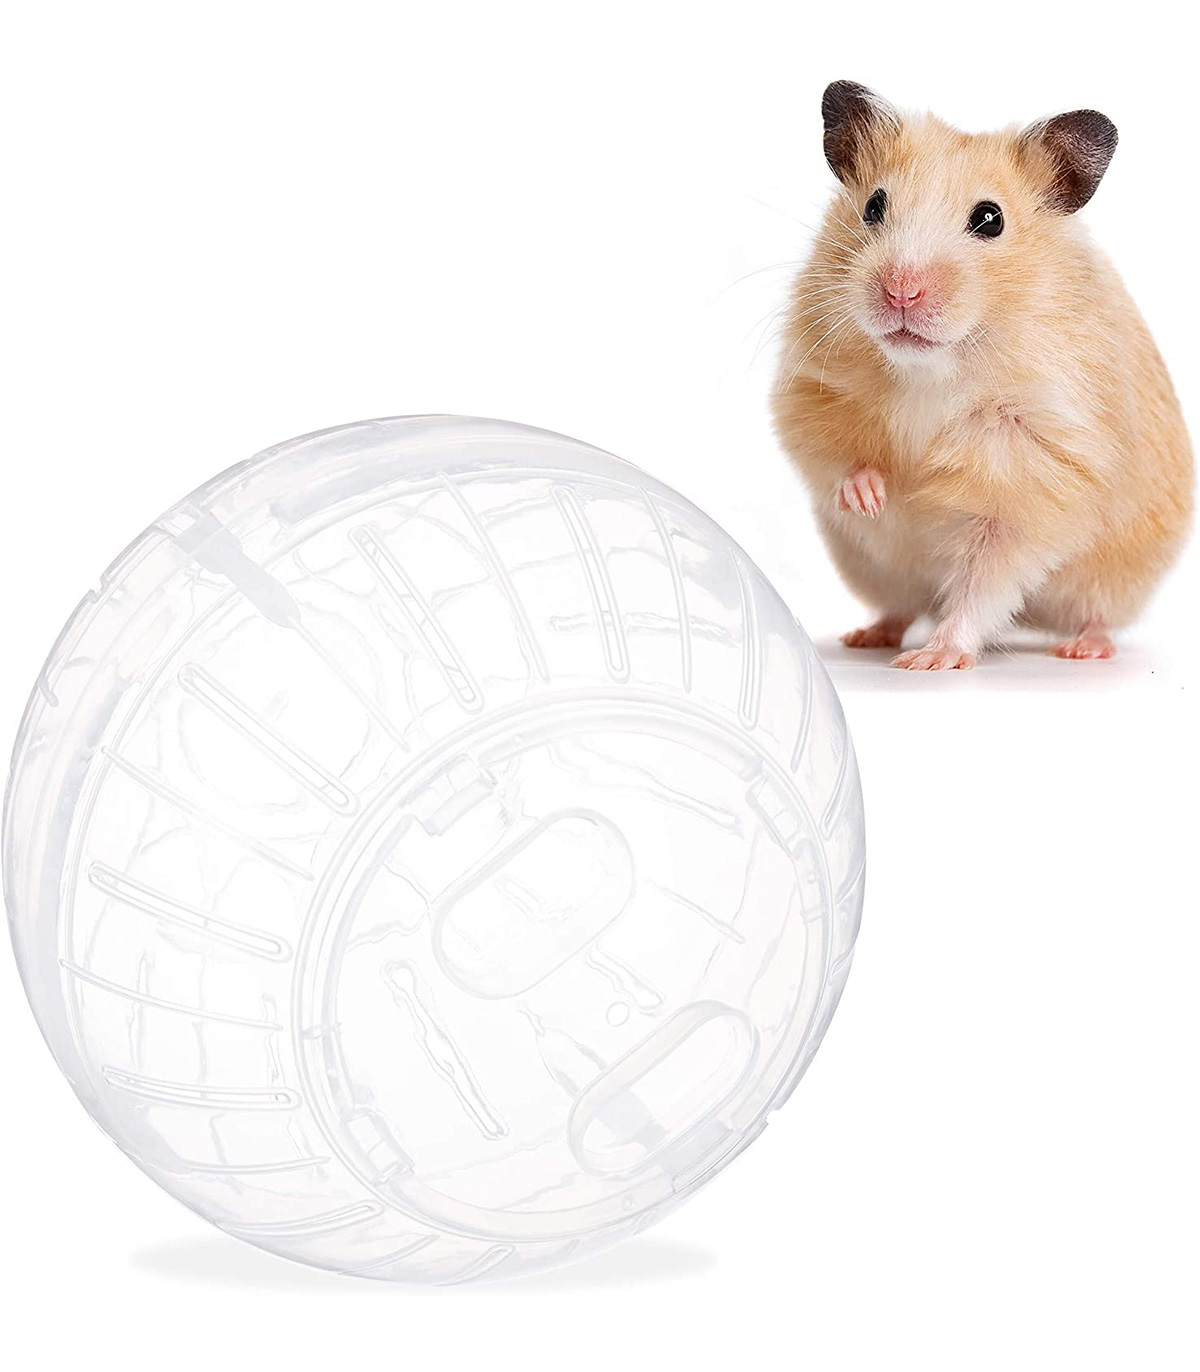 Minge hamster transparenta familio.ro pret redus imagine 2022 2